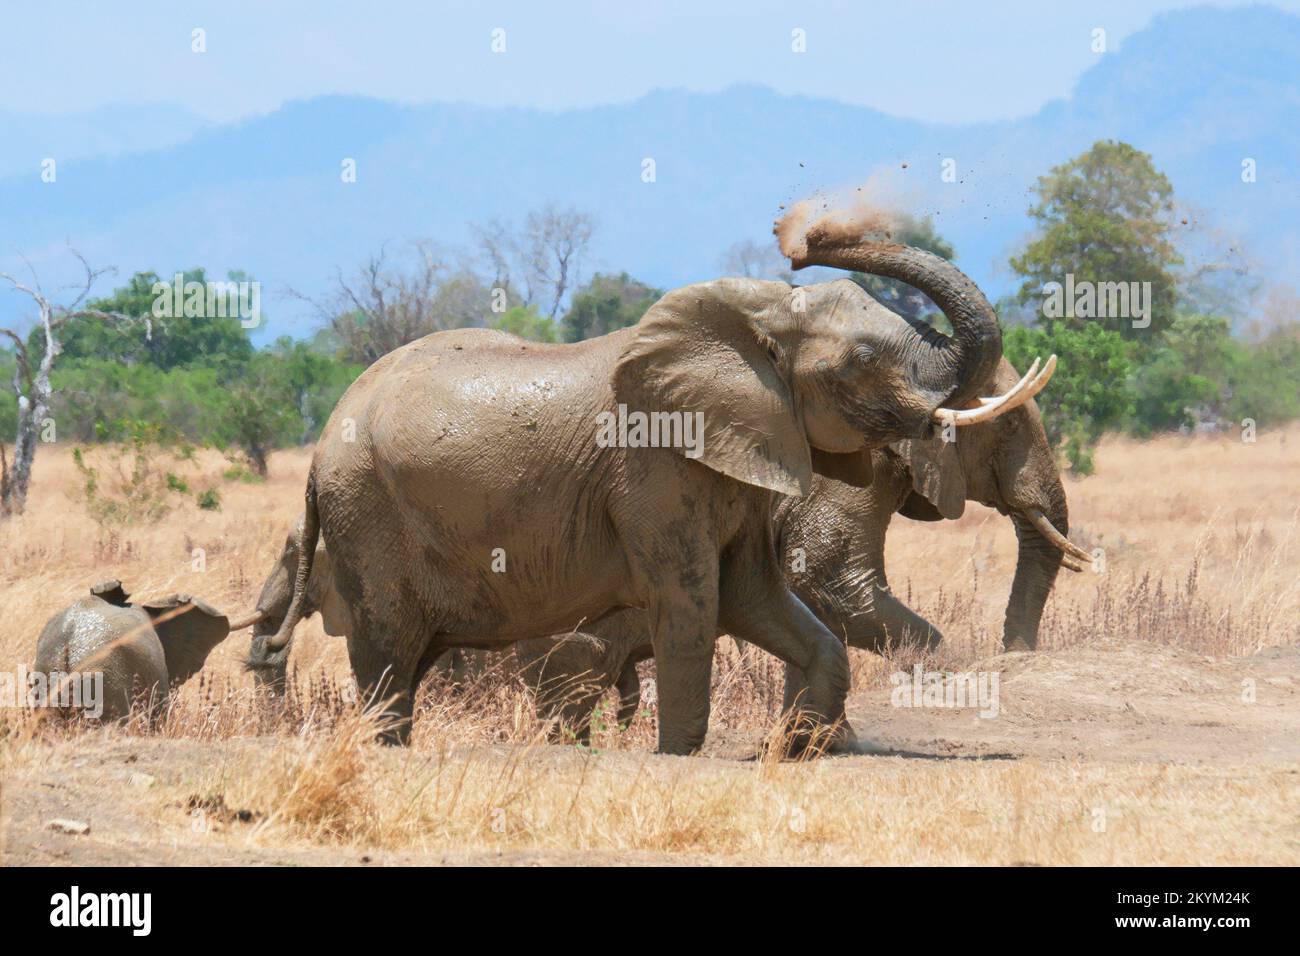 Un éléphant de Bush africain se couvre dans la poussière après avoir été baigné dans un trou d'eau dans la chaleur de midi du parc national de Mikumi en saison sèche Banque D'Images